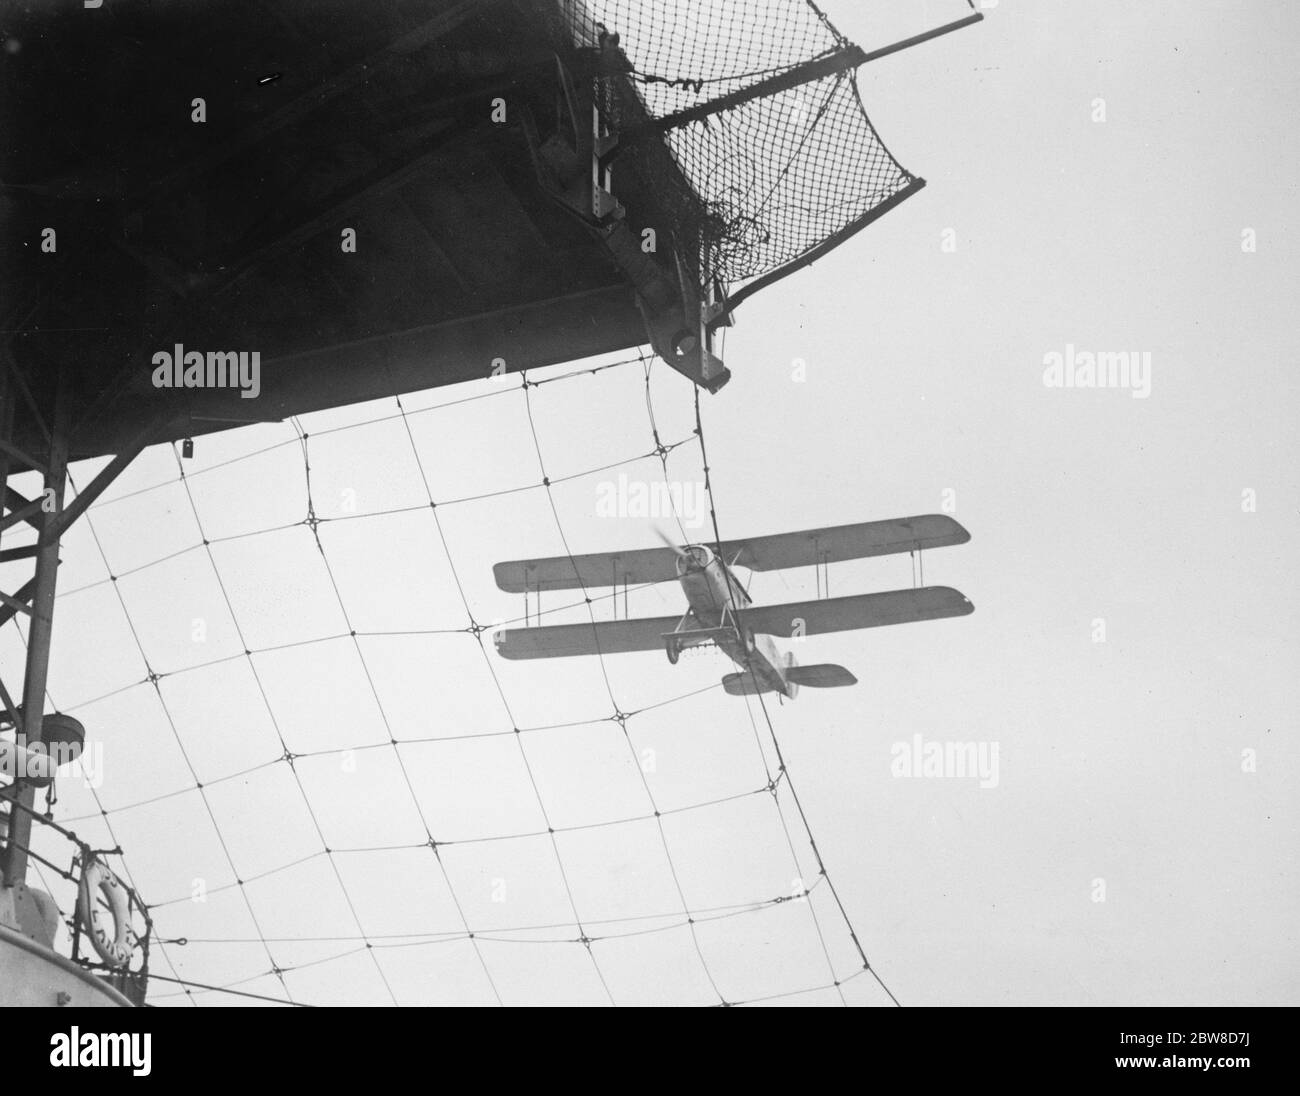 Wie Flugzeuge auf einem schwimmenden Flugplatz landen. Ein Marineflugzeug, das nahe San Diego auf dem Deck des US-Flugzeugträgers USS Langley landen wird. Beachten Sie die Abschirmung Draht Bildschirm, um das Flugzeug von der Landung auf dem unteren Deck zu verhindern. Dezember 1926 Stockfoto